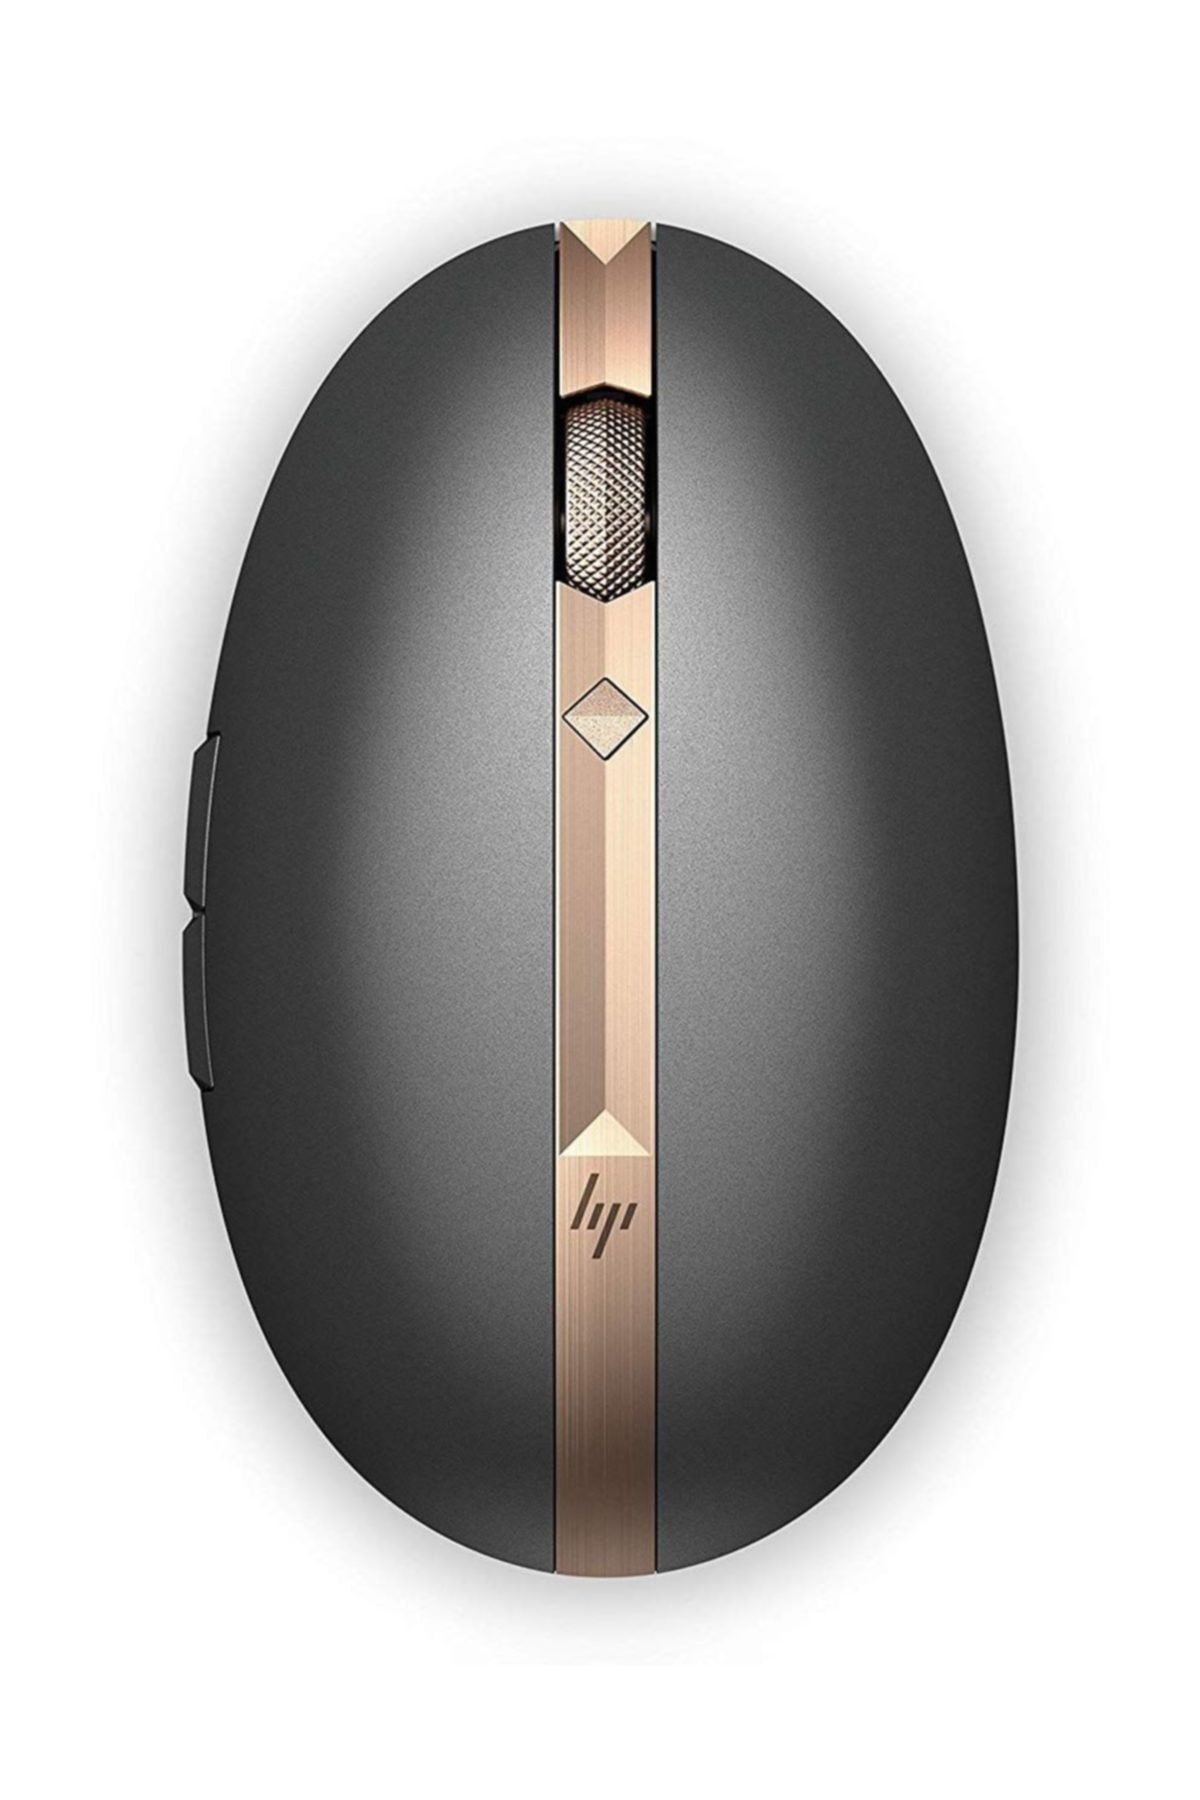 HP Siyah Lüks Bakır 3nz70aa Spectre 700 Kablosuz Bluetooth Şarj Edilebilir Mouse